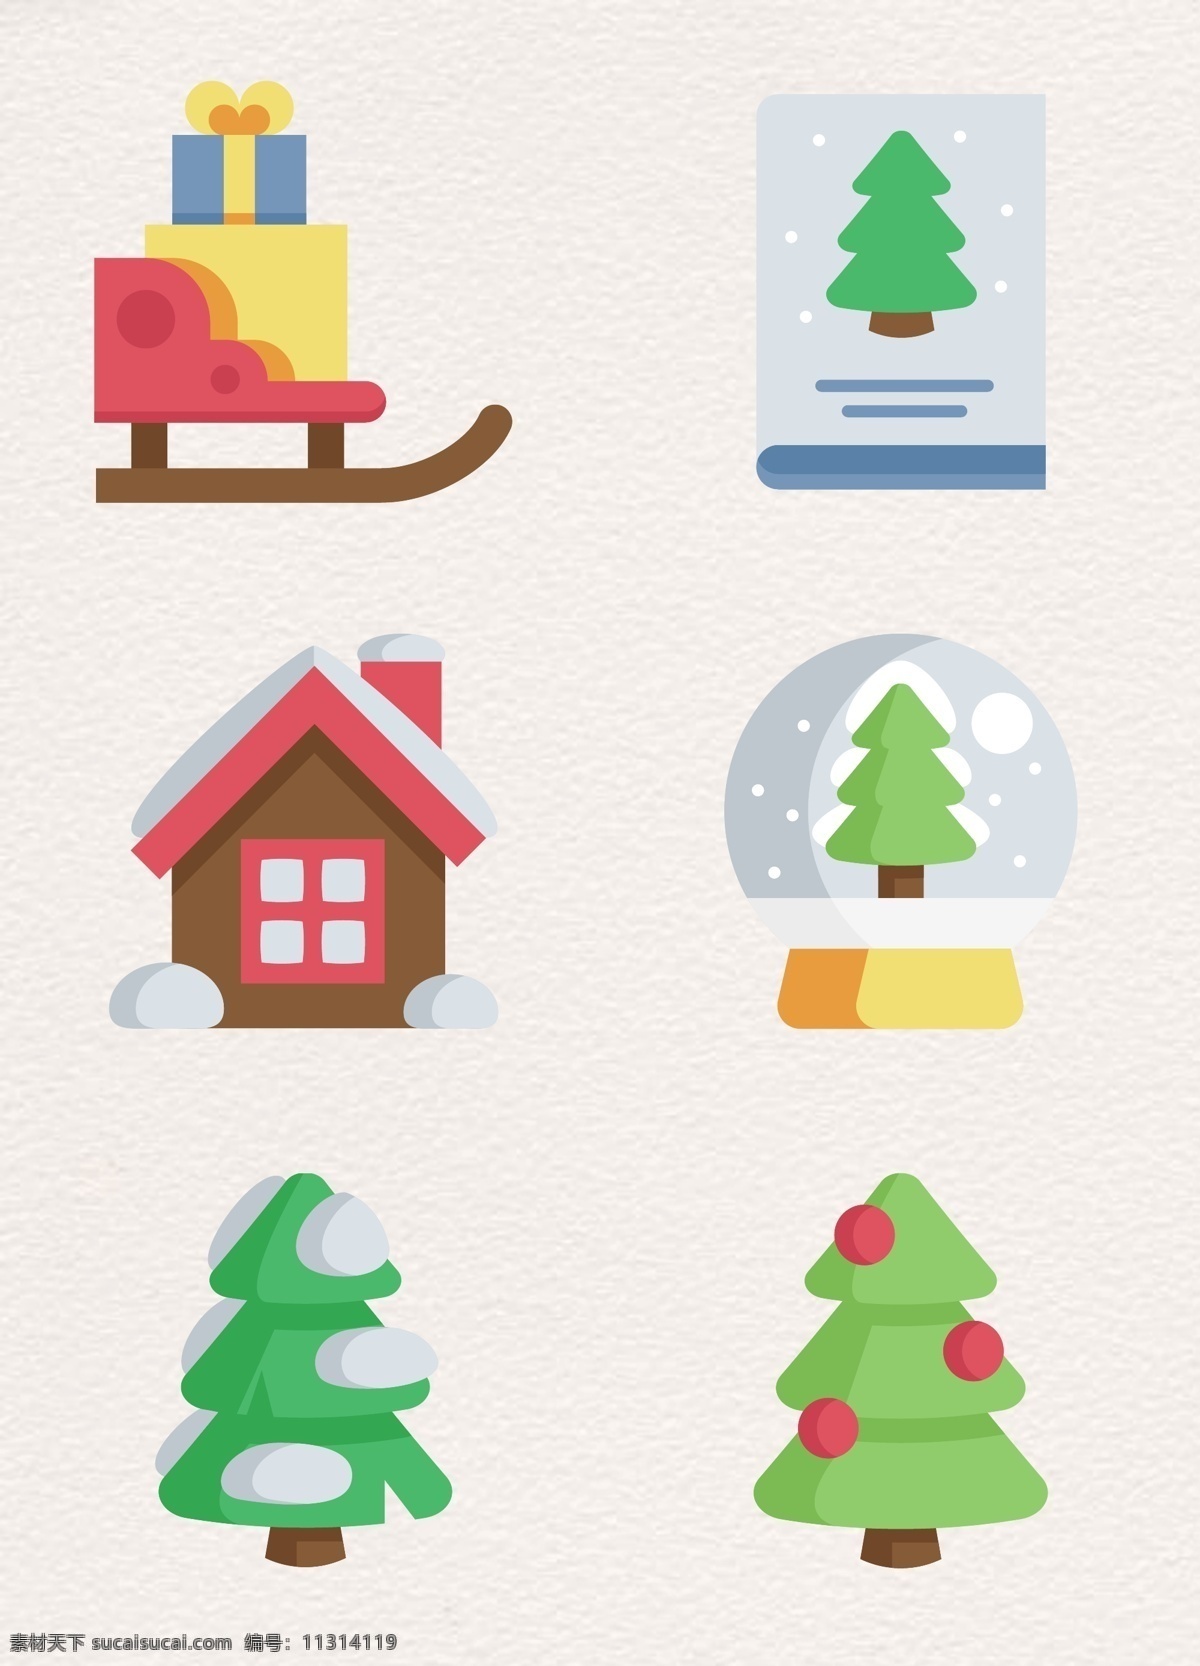 卡通 圣诞 元素 矢量 矢量图 圣诞元素 圣诞树 松树 手绘 雪橇 雪屋 雪球